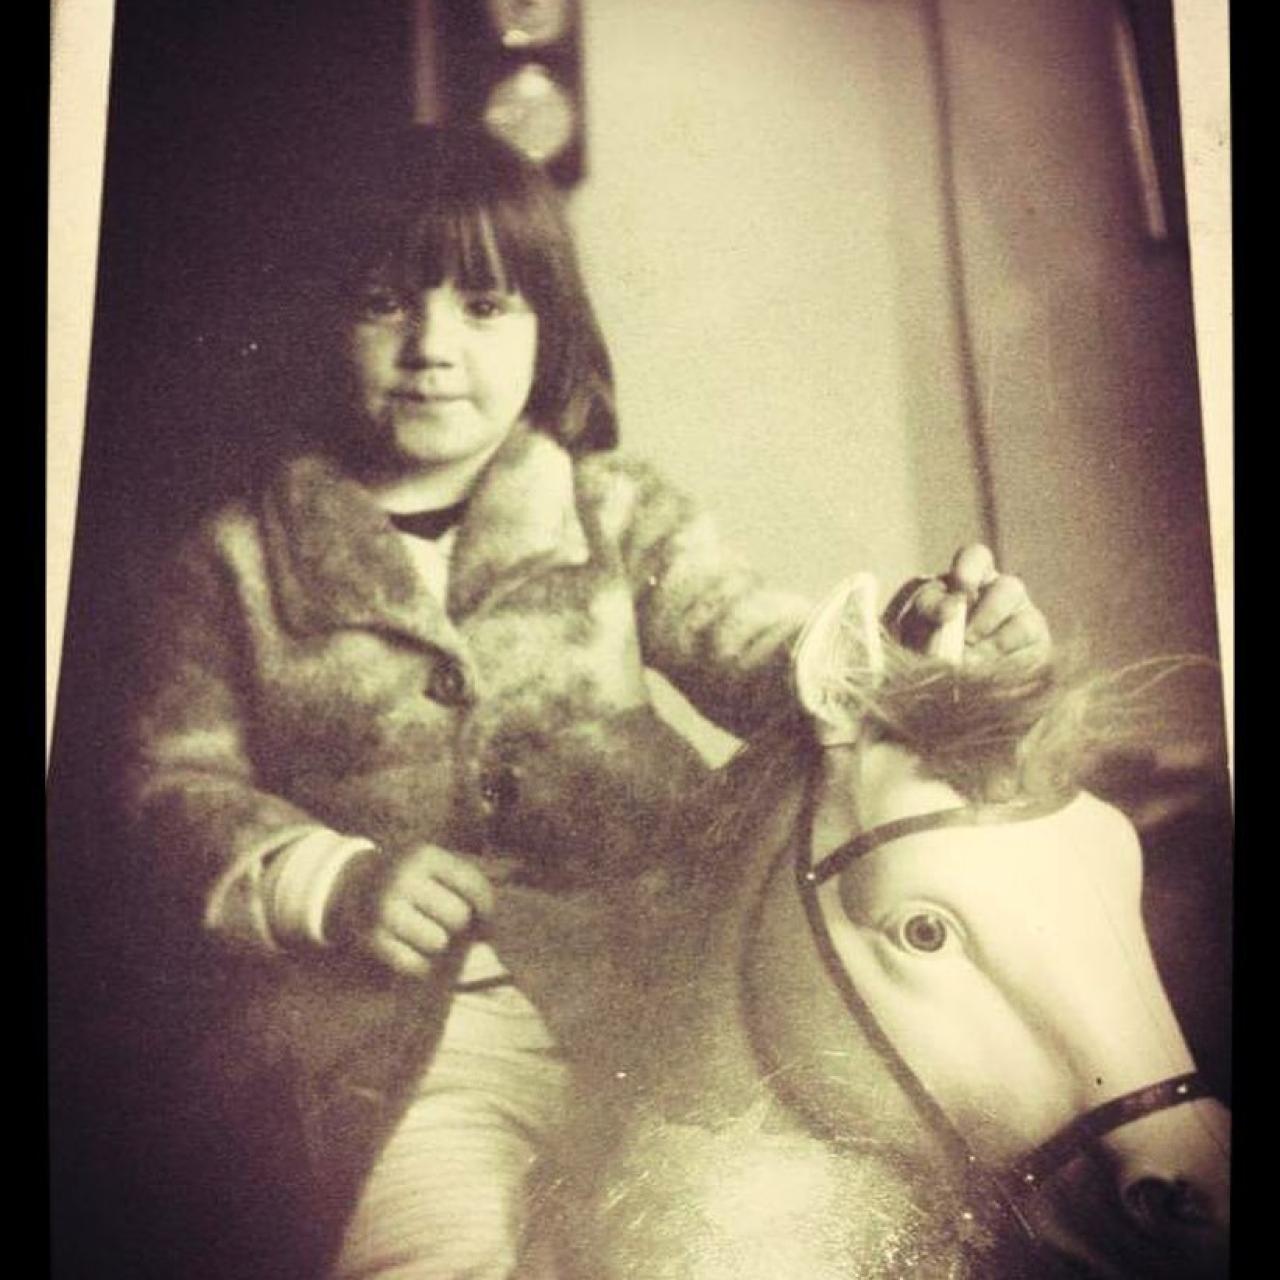 La actriz en una foto de niña compartida en su cuenta de Instagram.